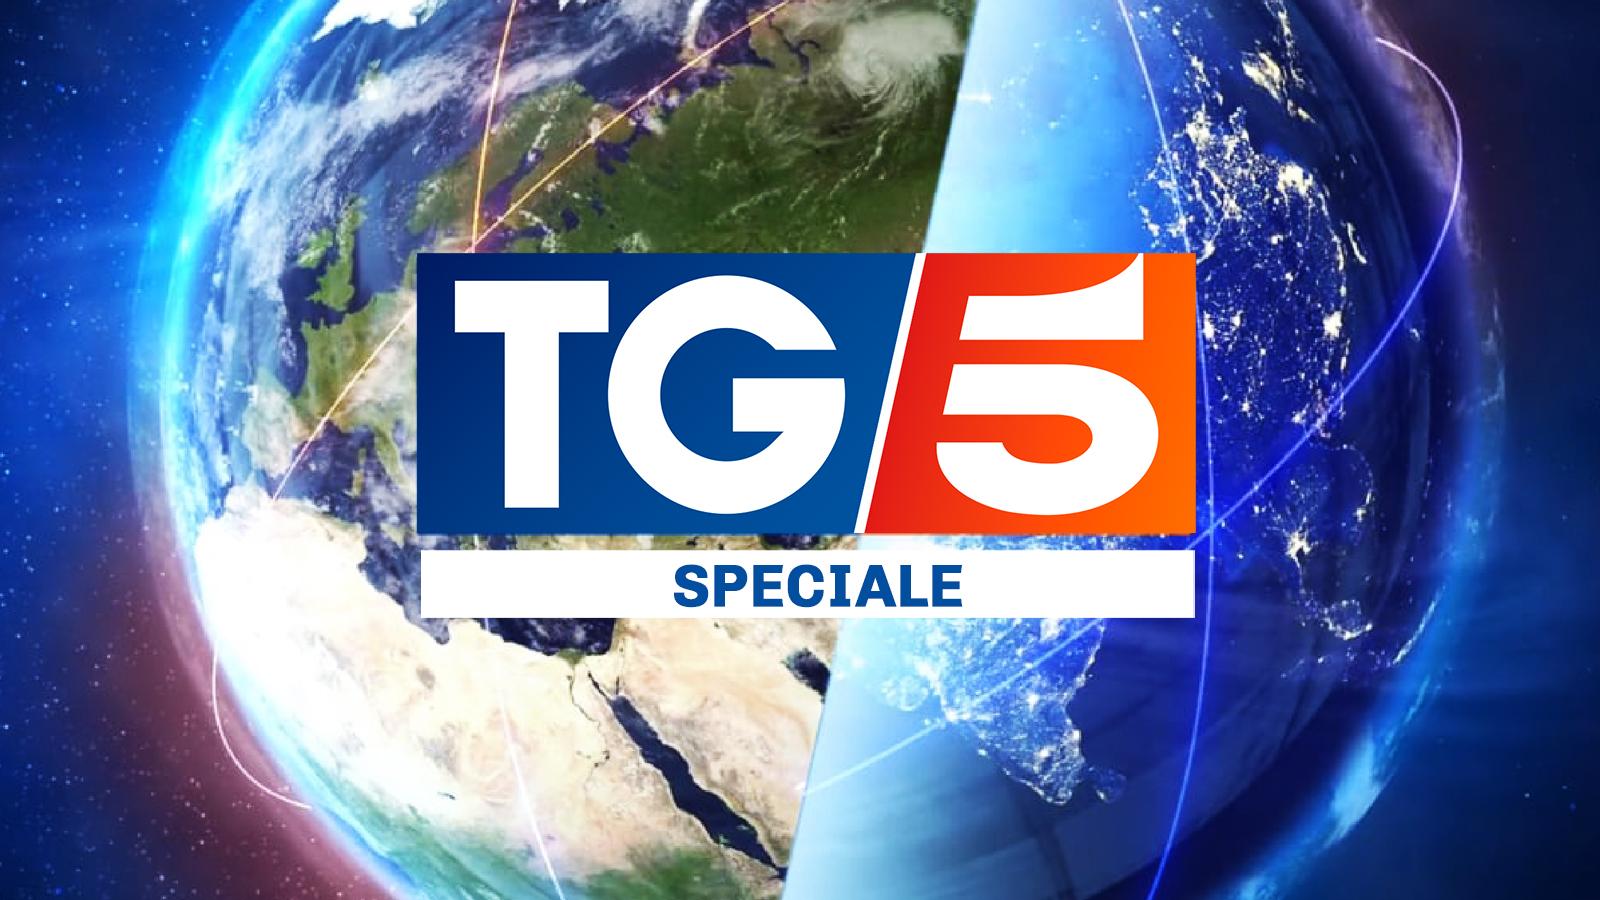 Speciale Tg5 Parole dal Silenzio, in seconda serata su Canale5